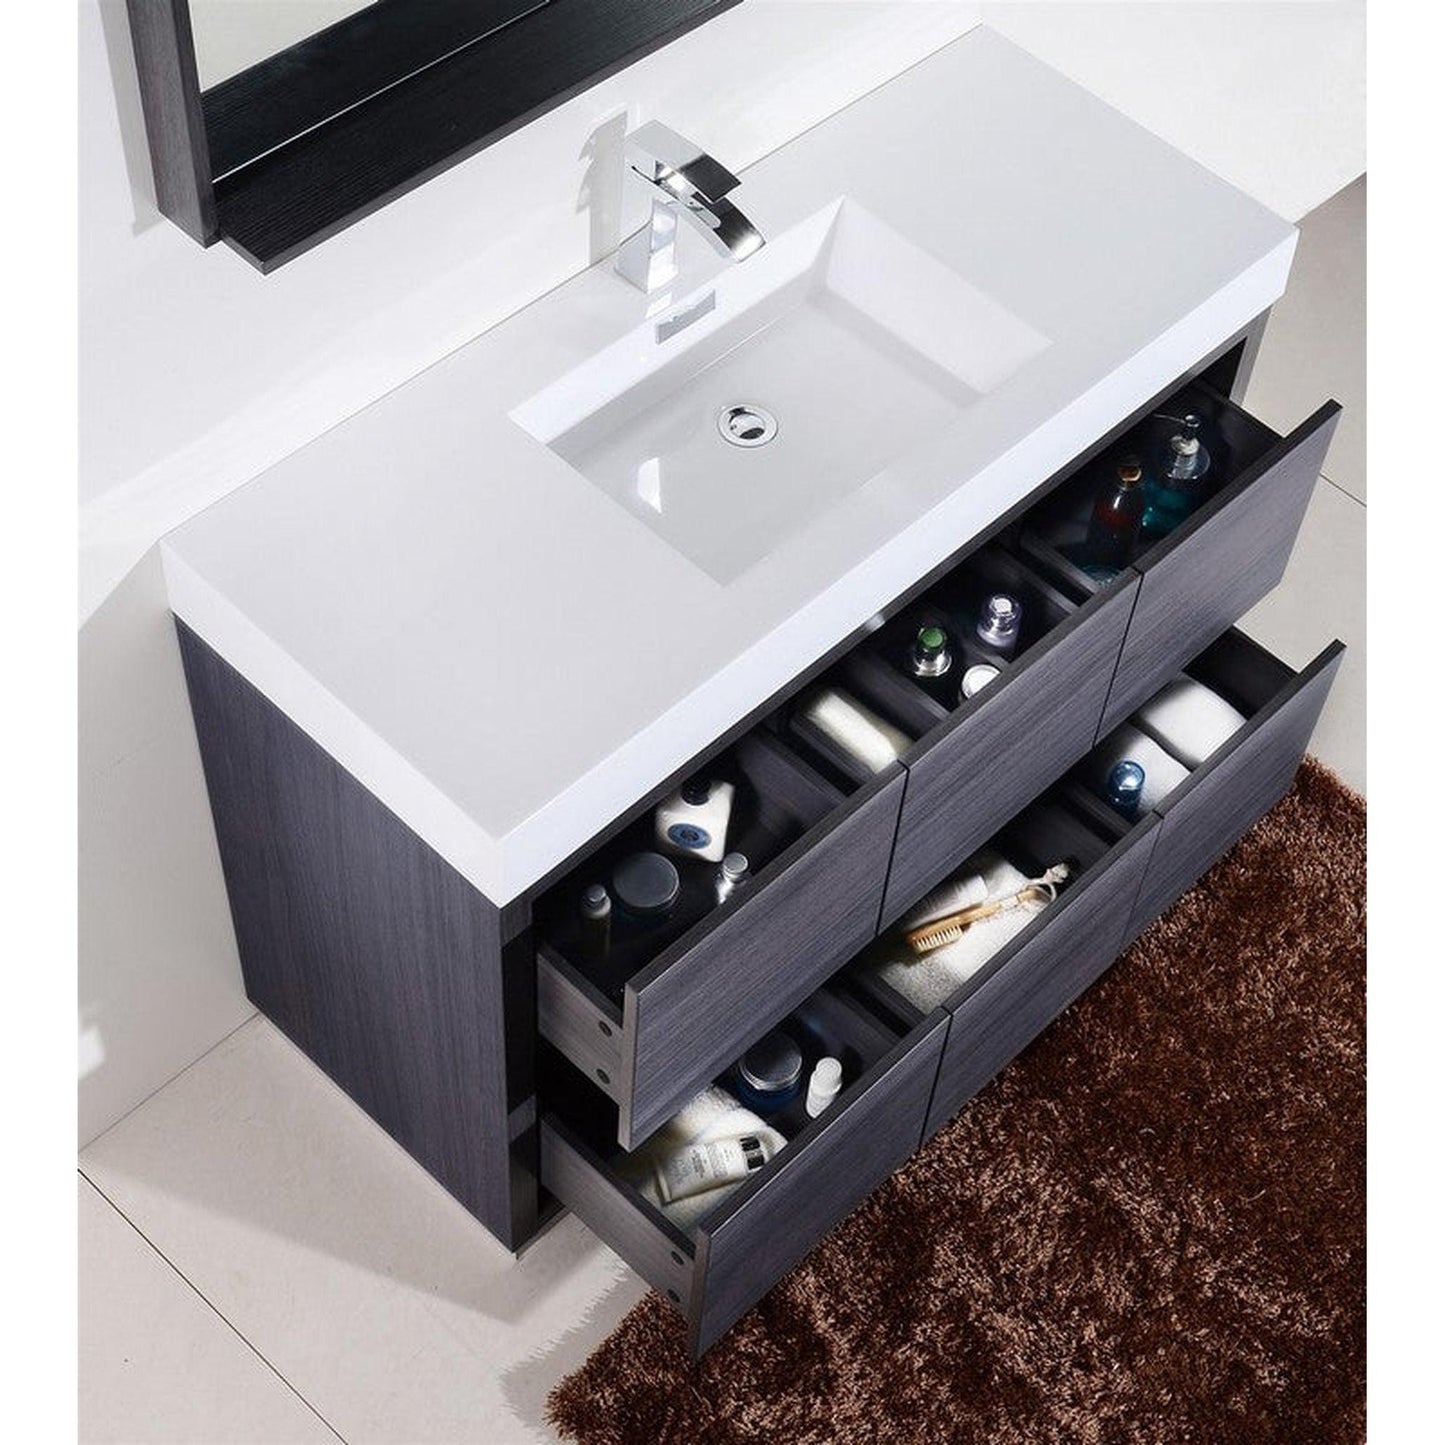 KubeBath Bliss 60" Gray Oak Freestanding Modern Bathroom Vanity With Single Integrated Acrylic Sink With Overflow